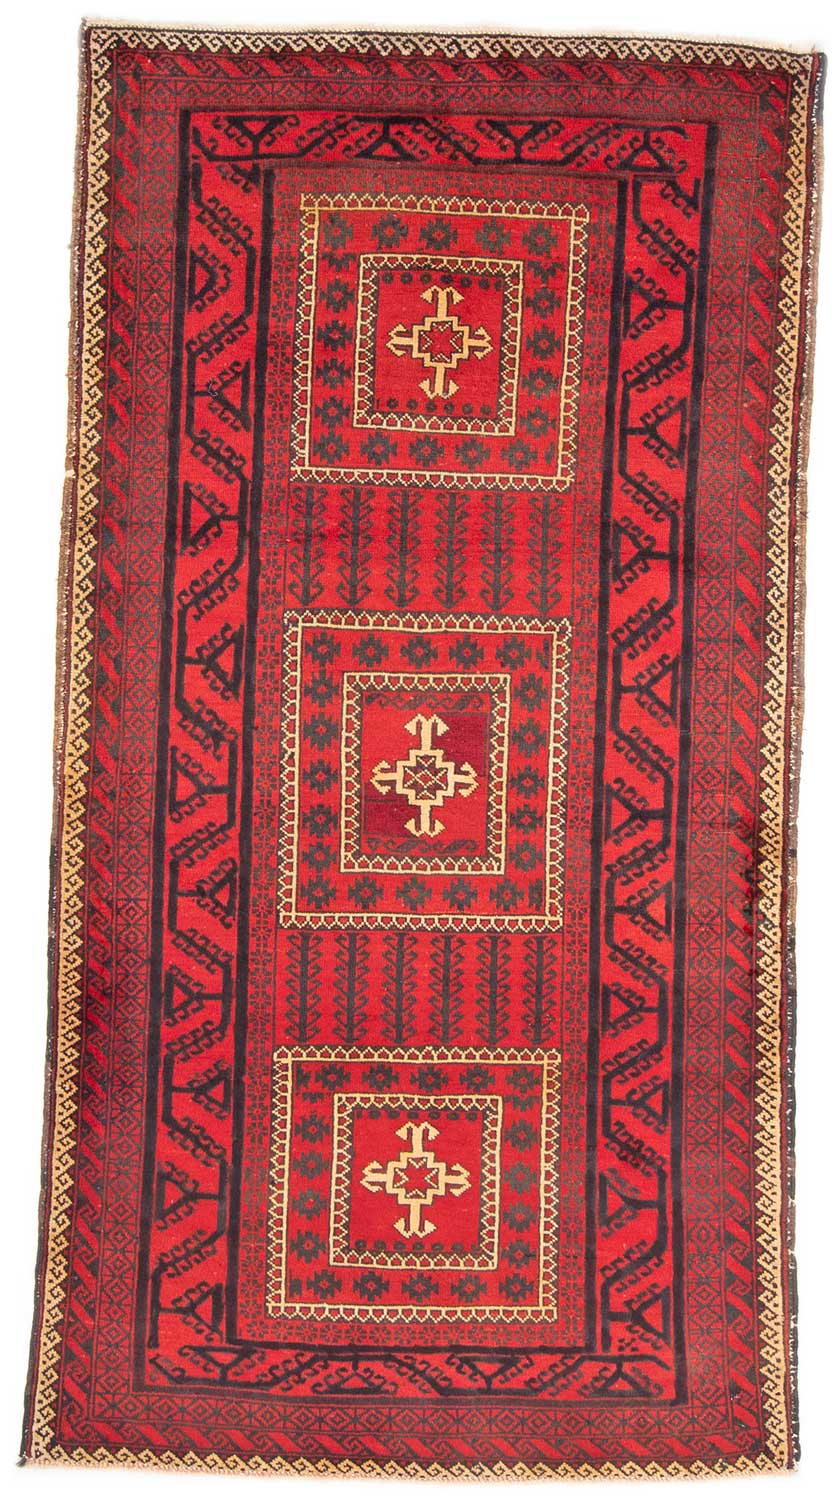 Rot Hamburg Iran Teppich cool hübsch modern aufregend edel 